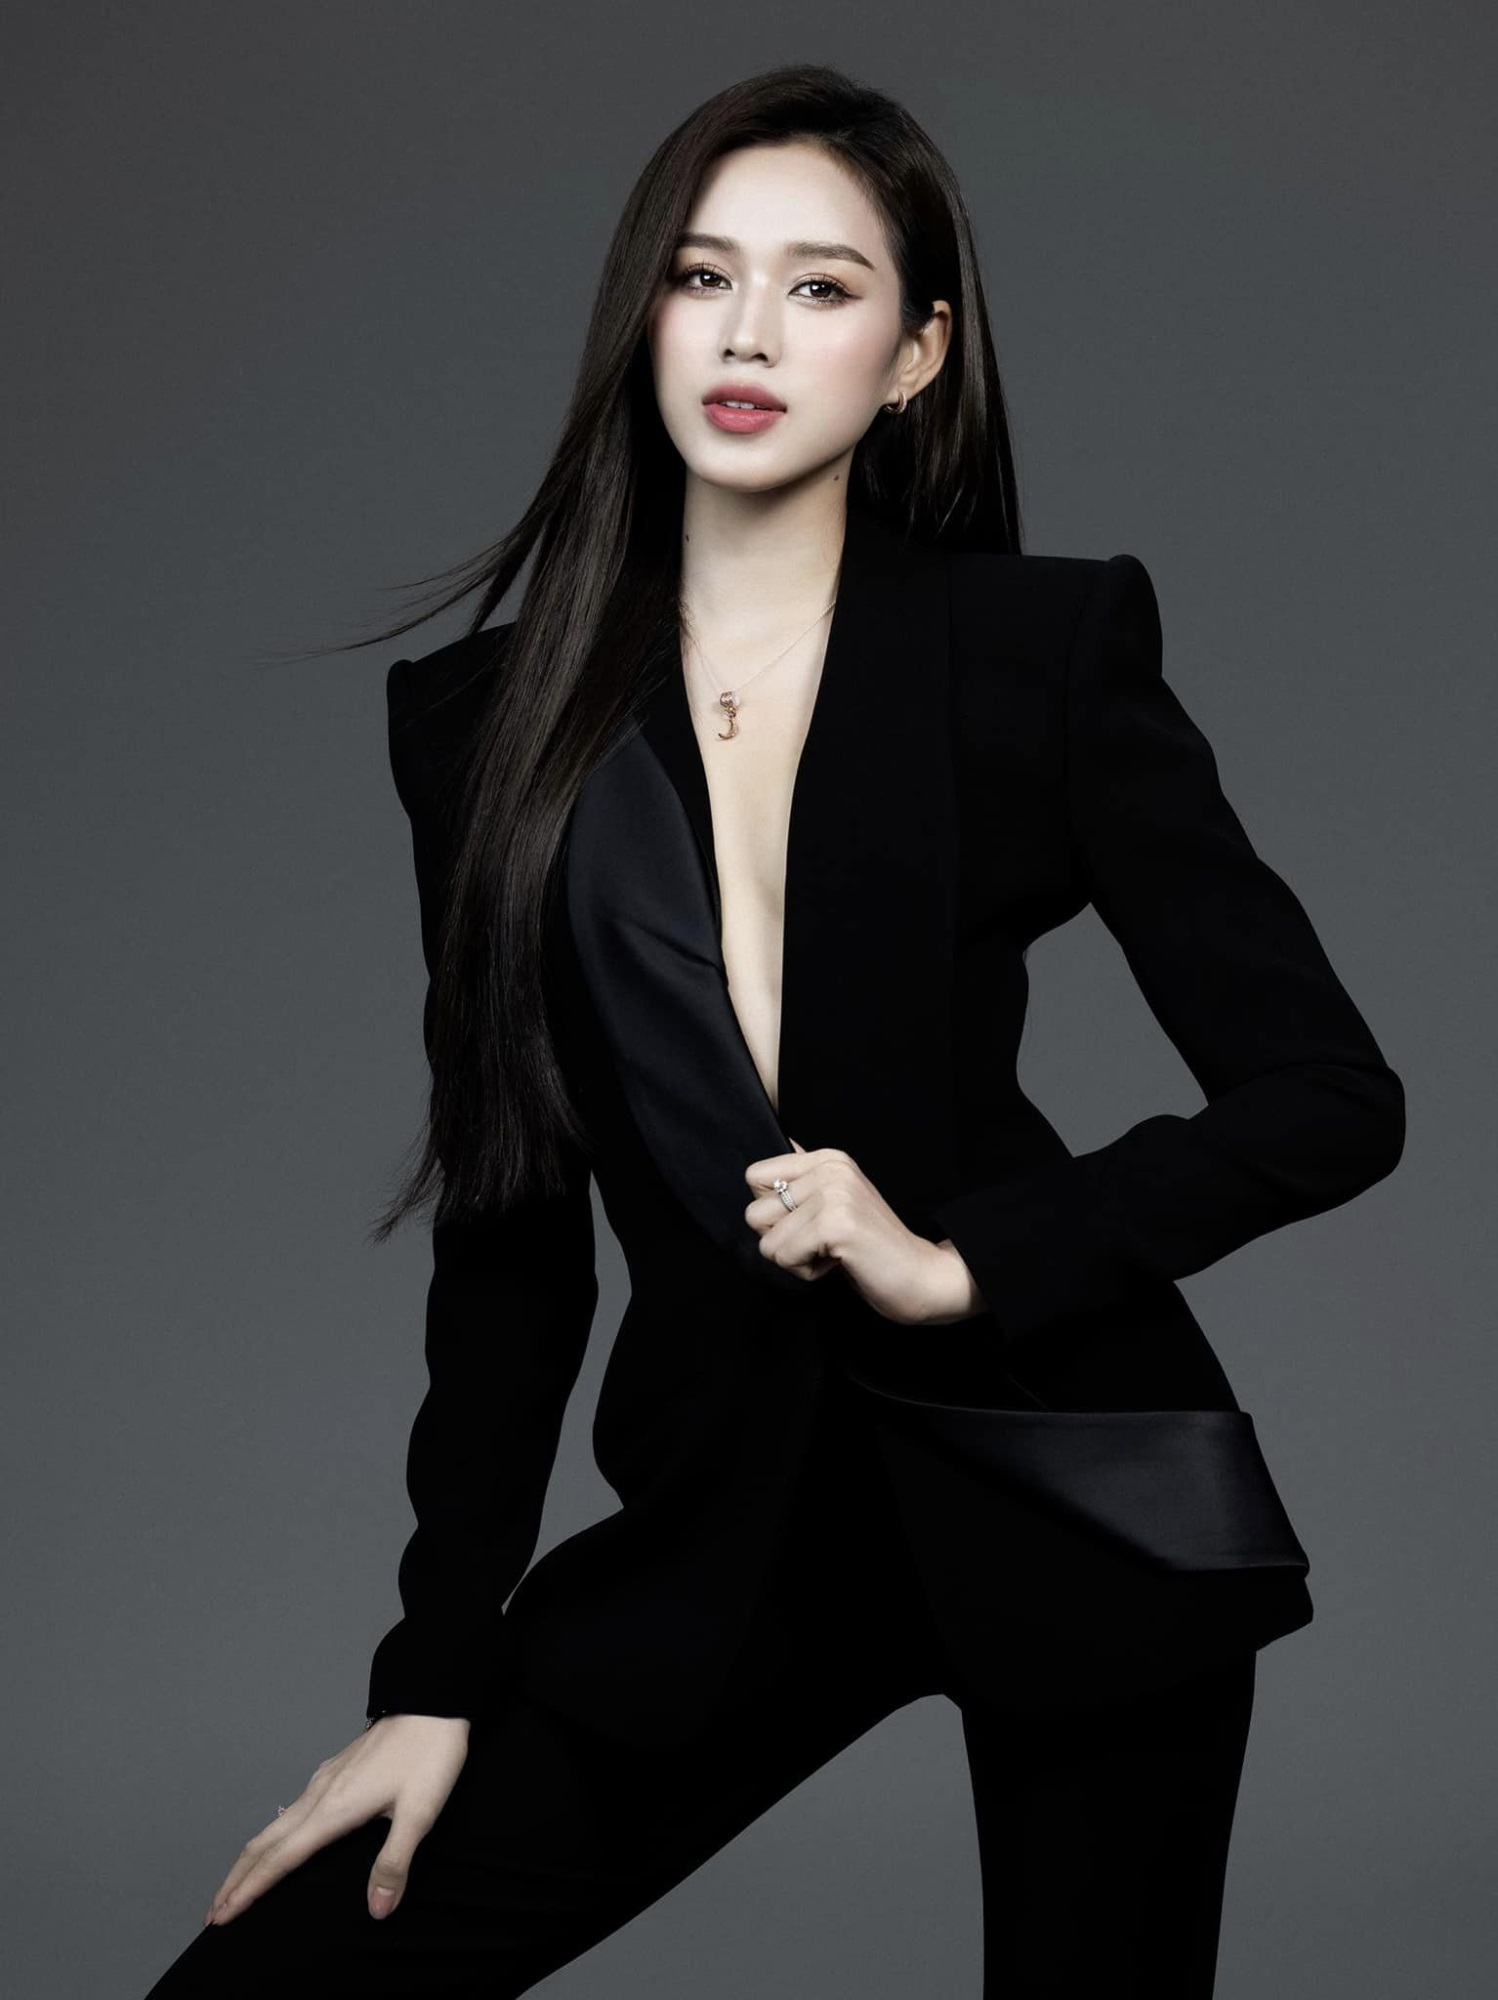 Hoa hậu Đỗ Thị Hà: Muốn làm đại gia của chính mình, chia sẻ kế hoạch sớm theo học chương trình thạc sĩ - Ảnh 2